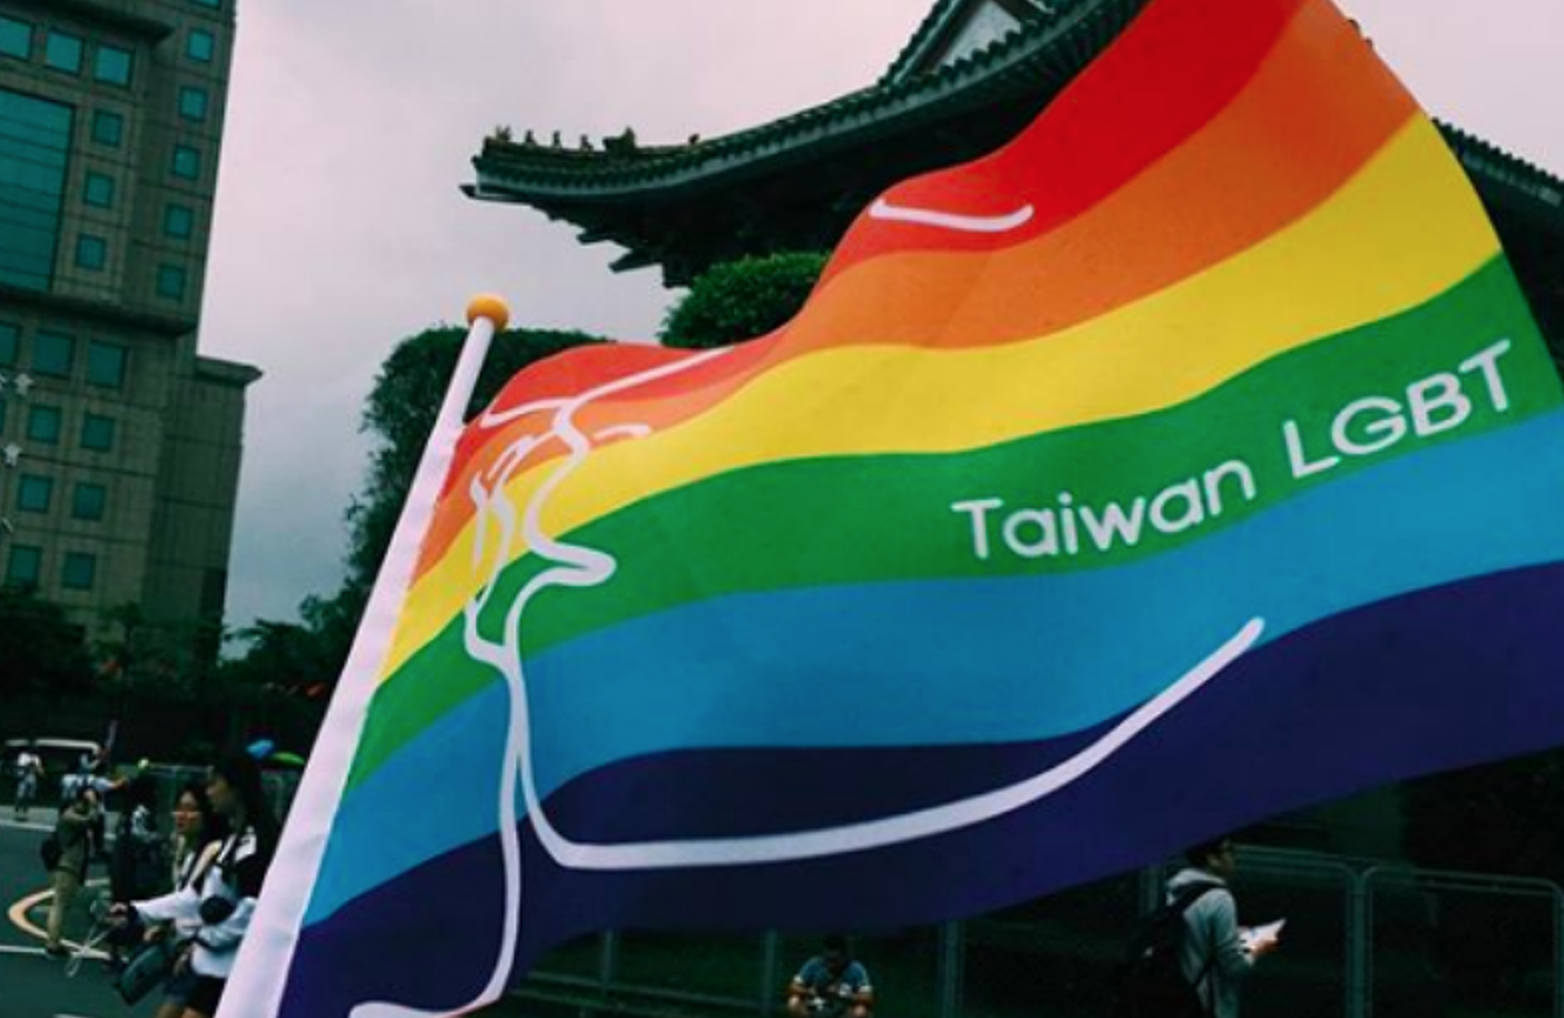 DAL MONDO - Anche Taiwan acconsente alla riassegnazione del sesso senza operazione chirurgica 1